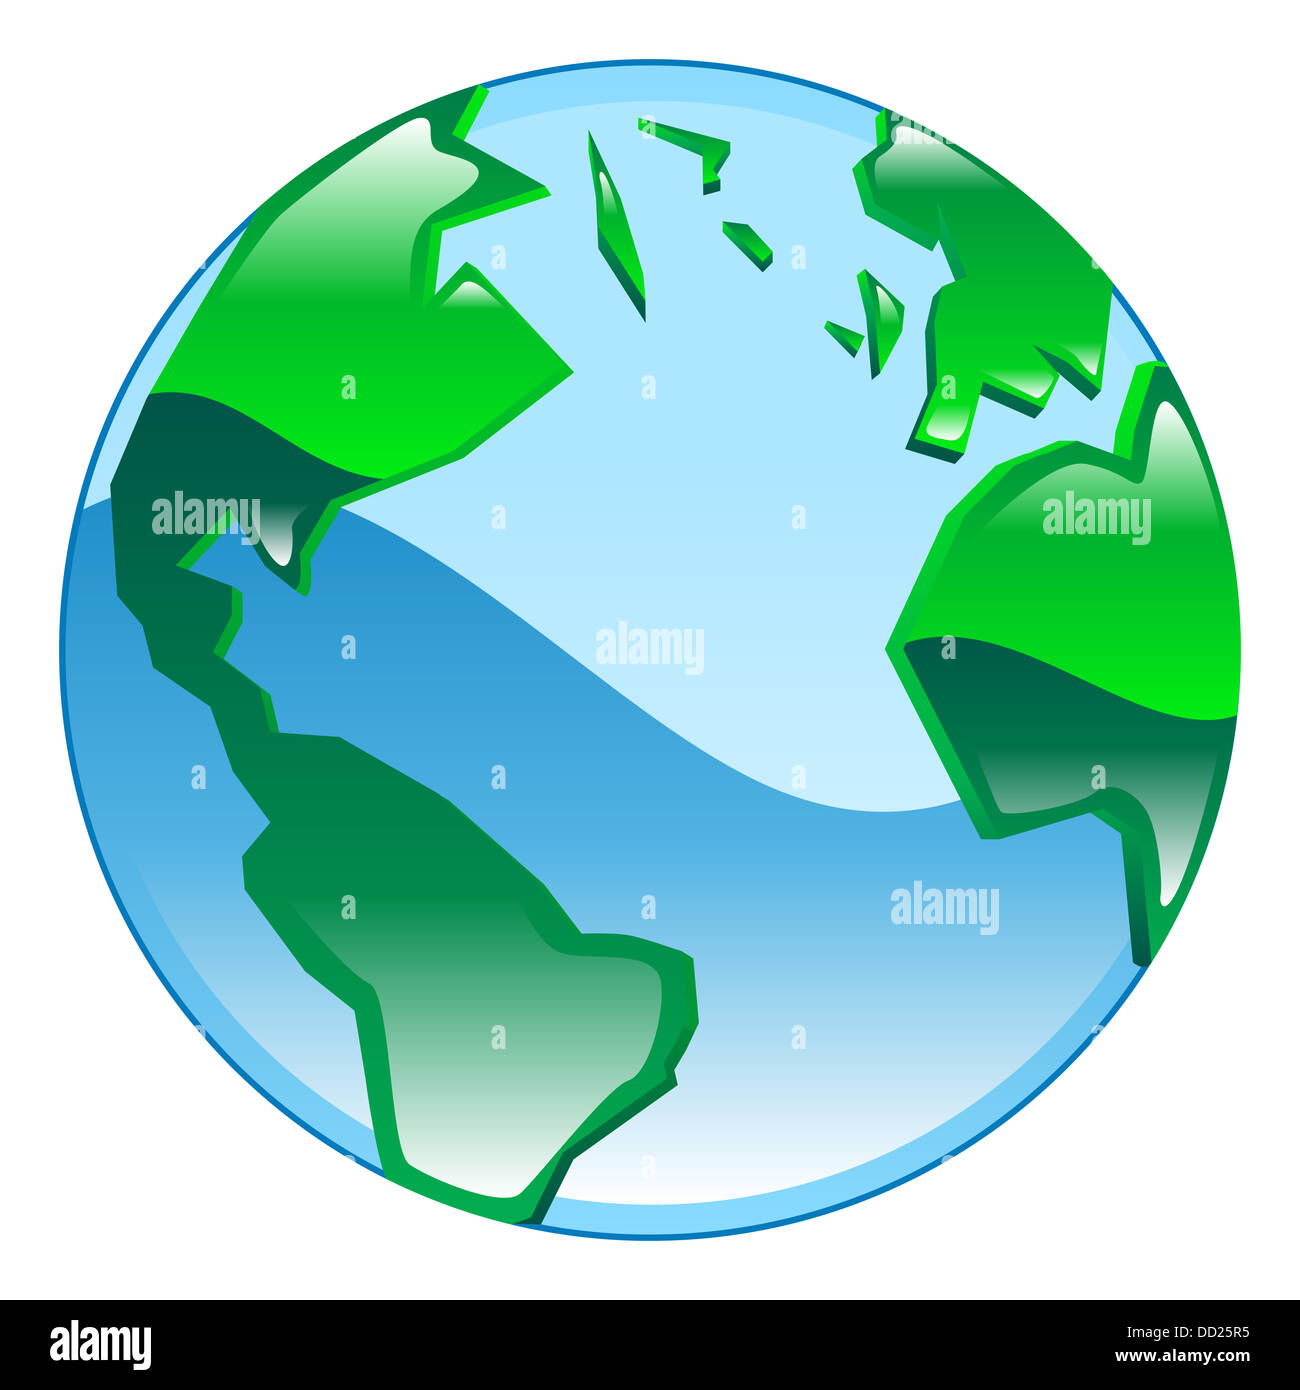 Shiny glossy globe icon clipart illustration Stock Photo